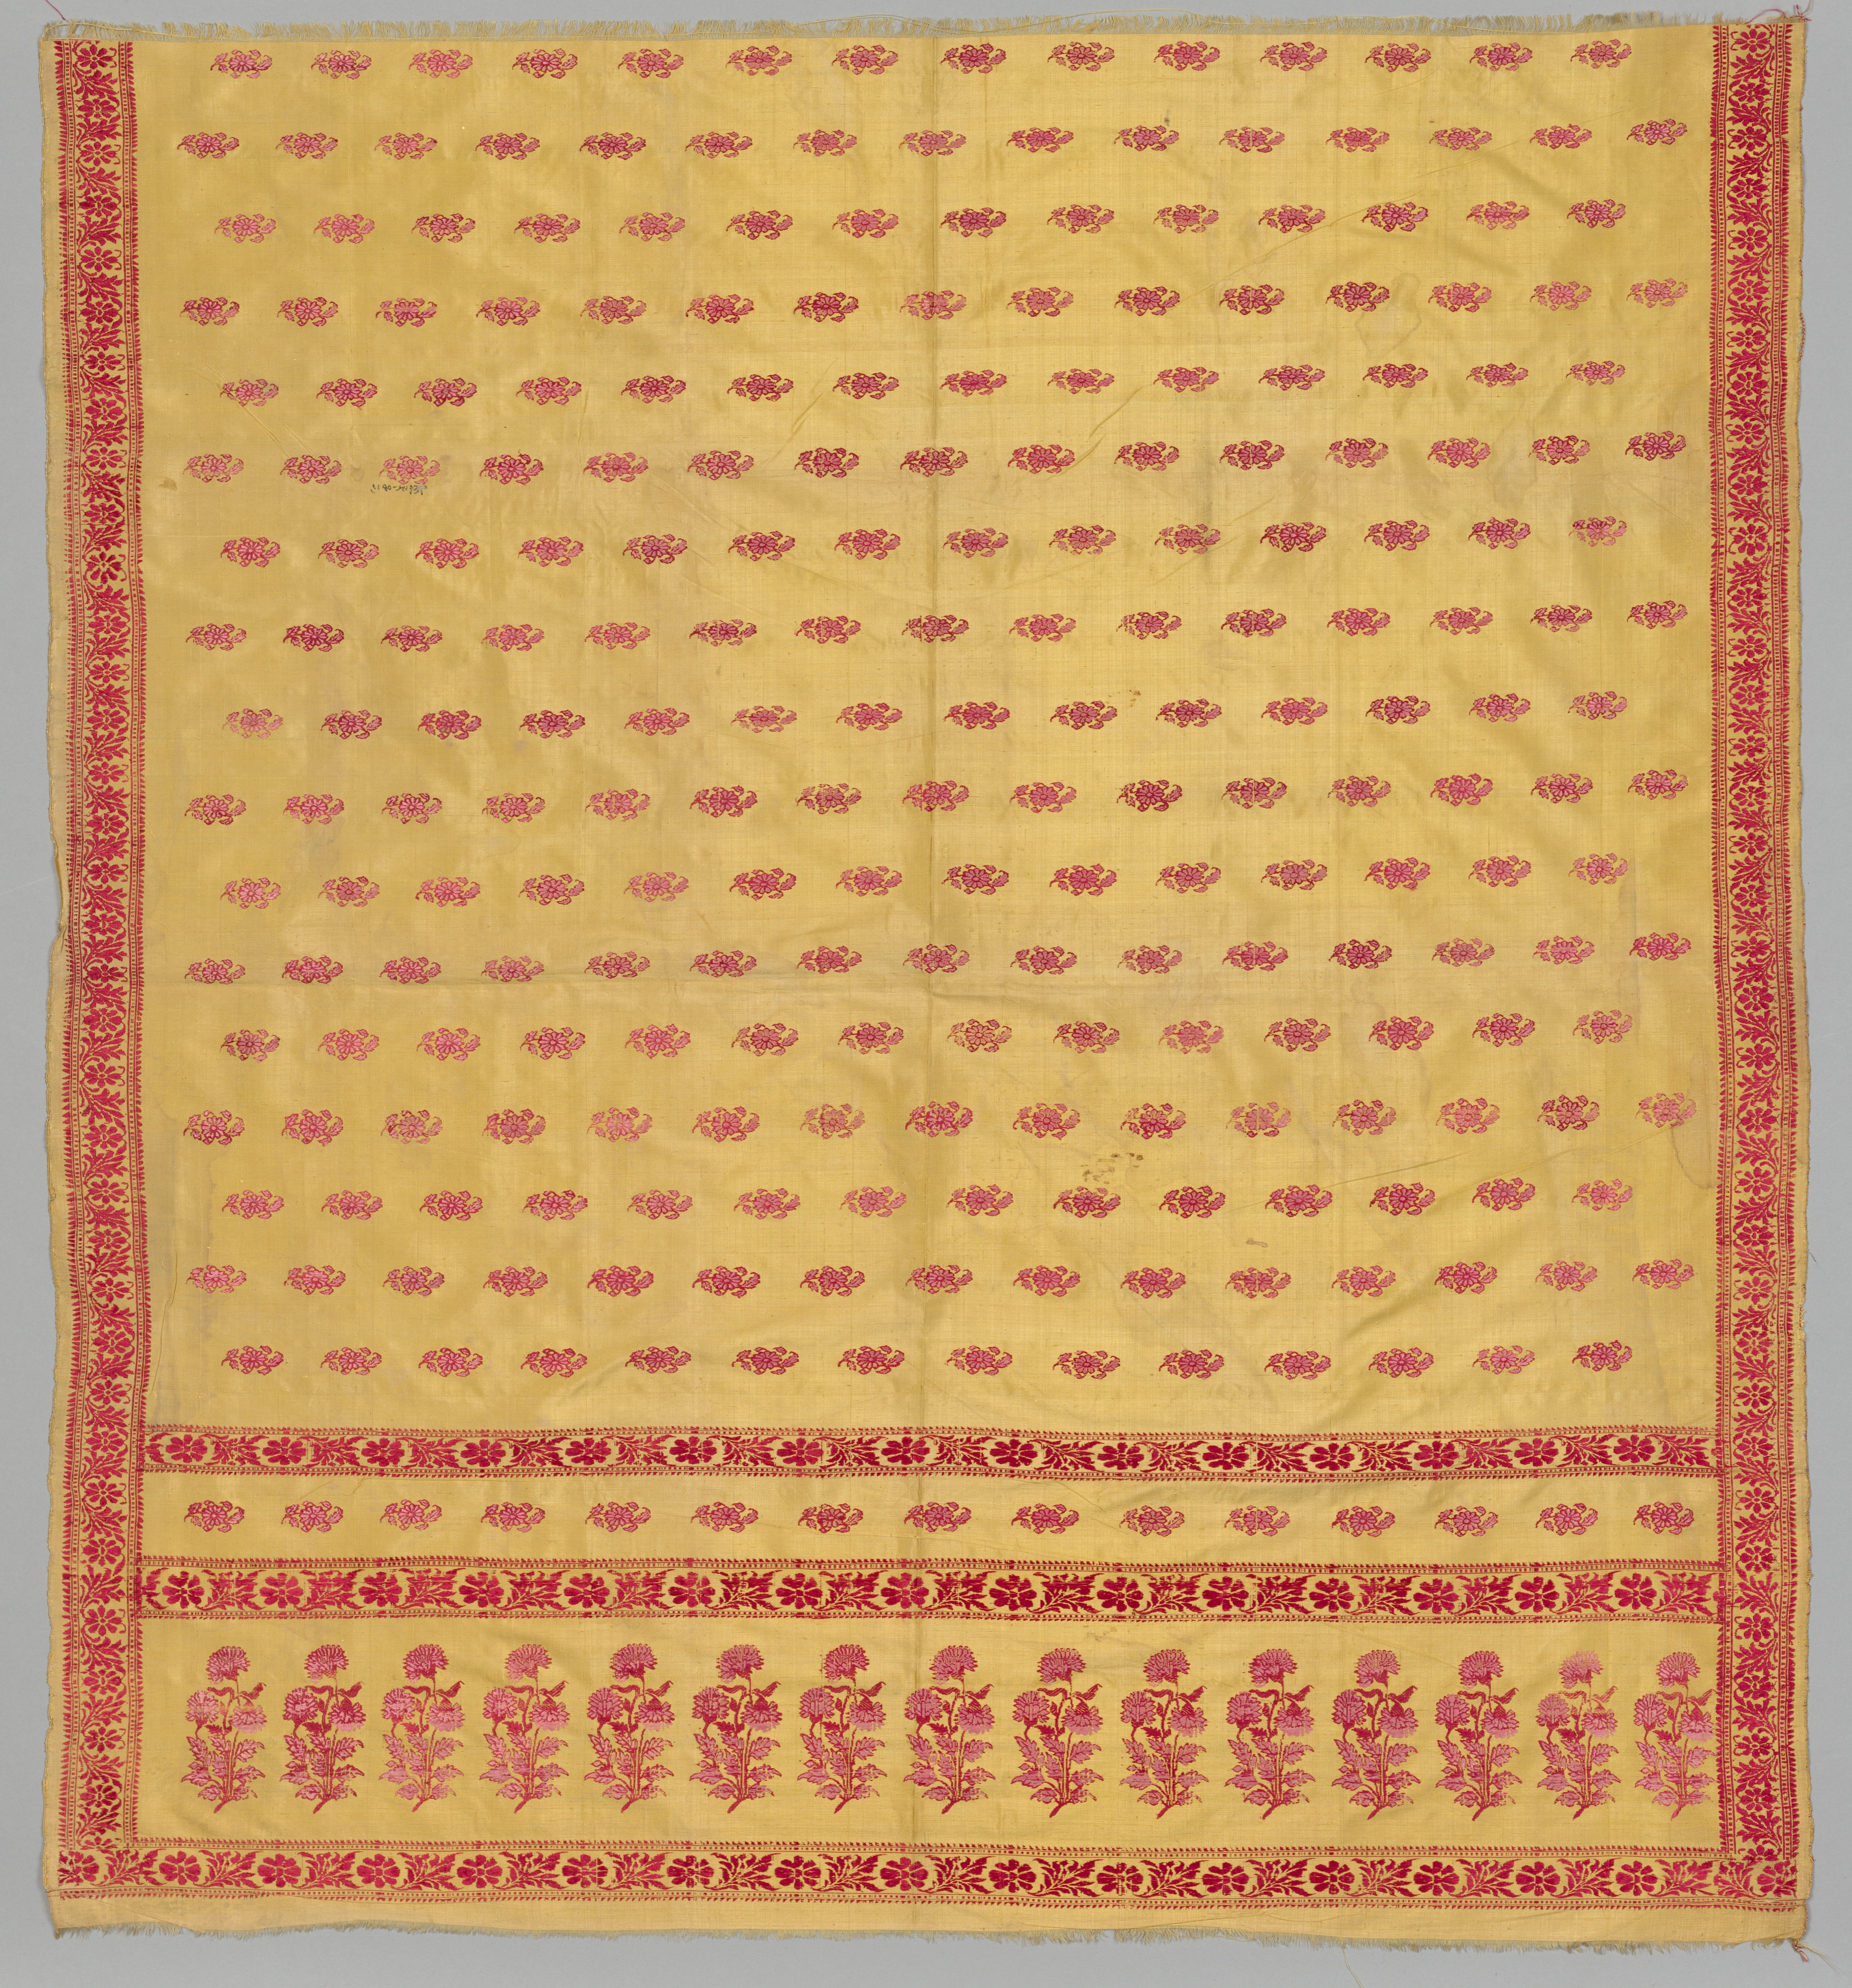 Part of a Sari